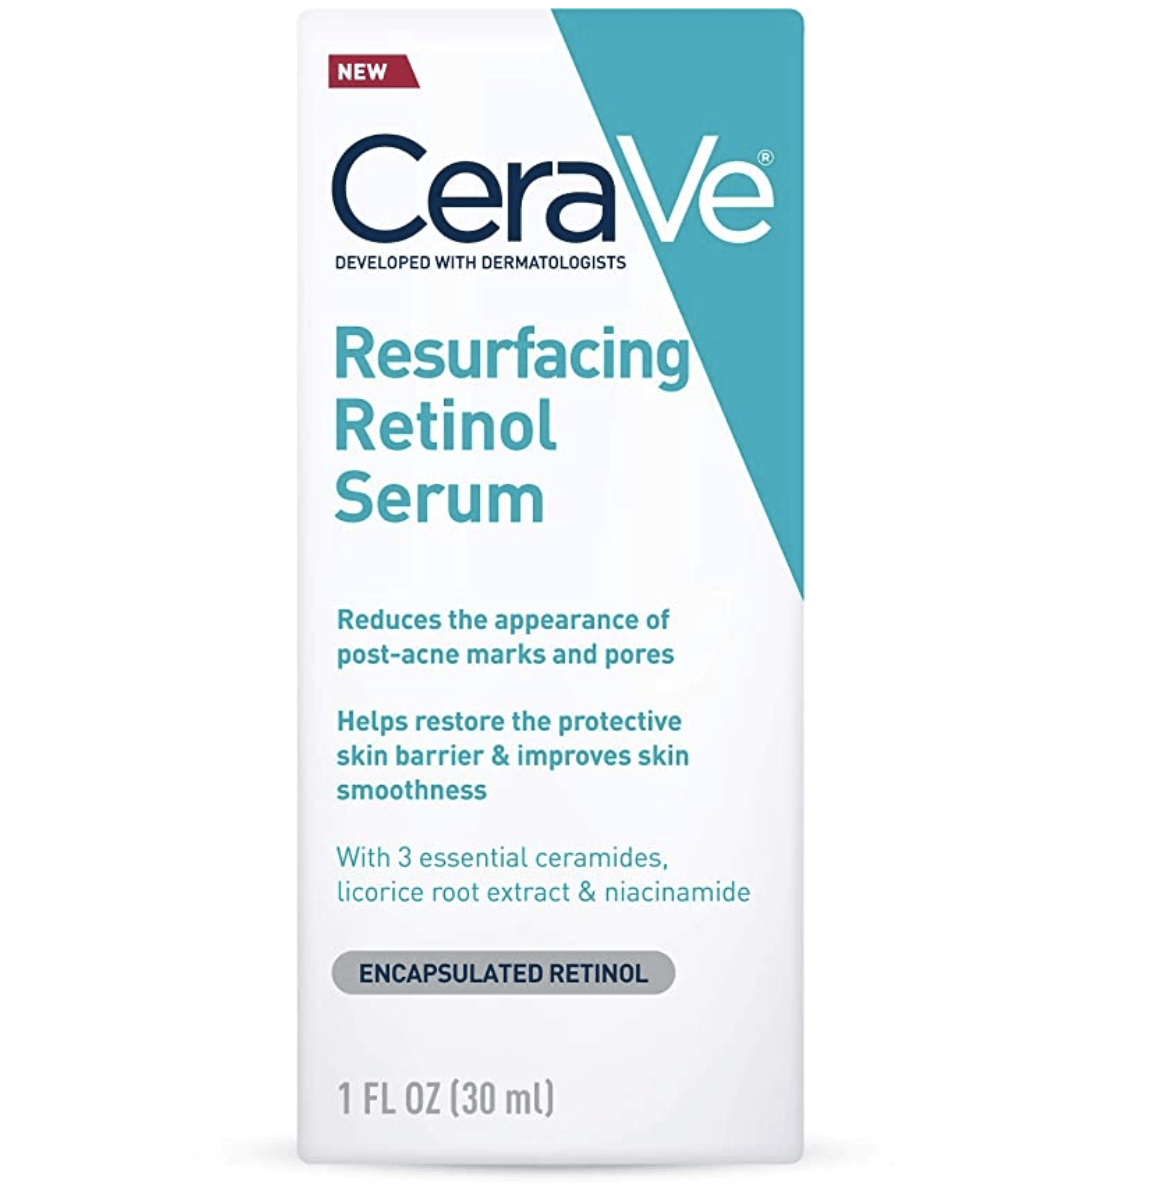 The CeraVe Resurfacing Retinol Serum my skin glow